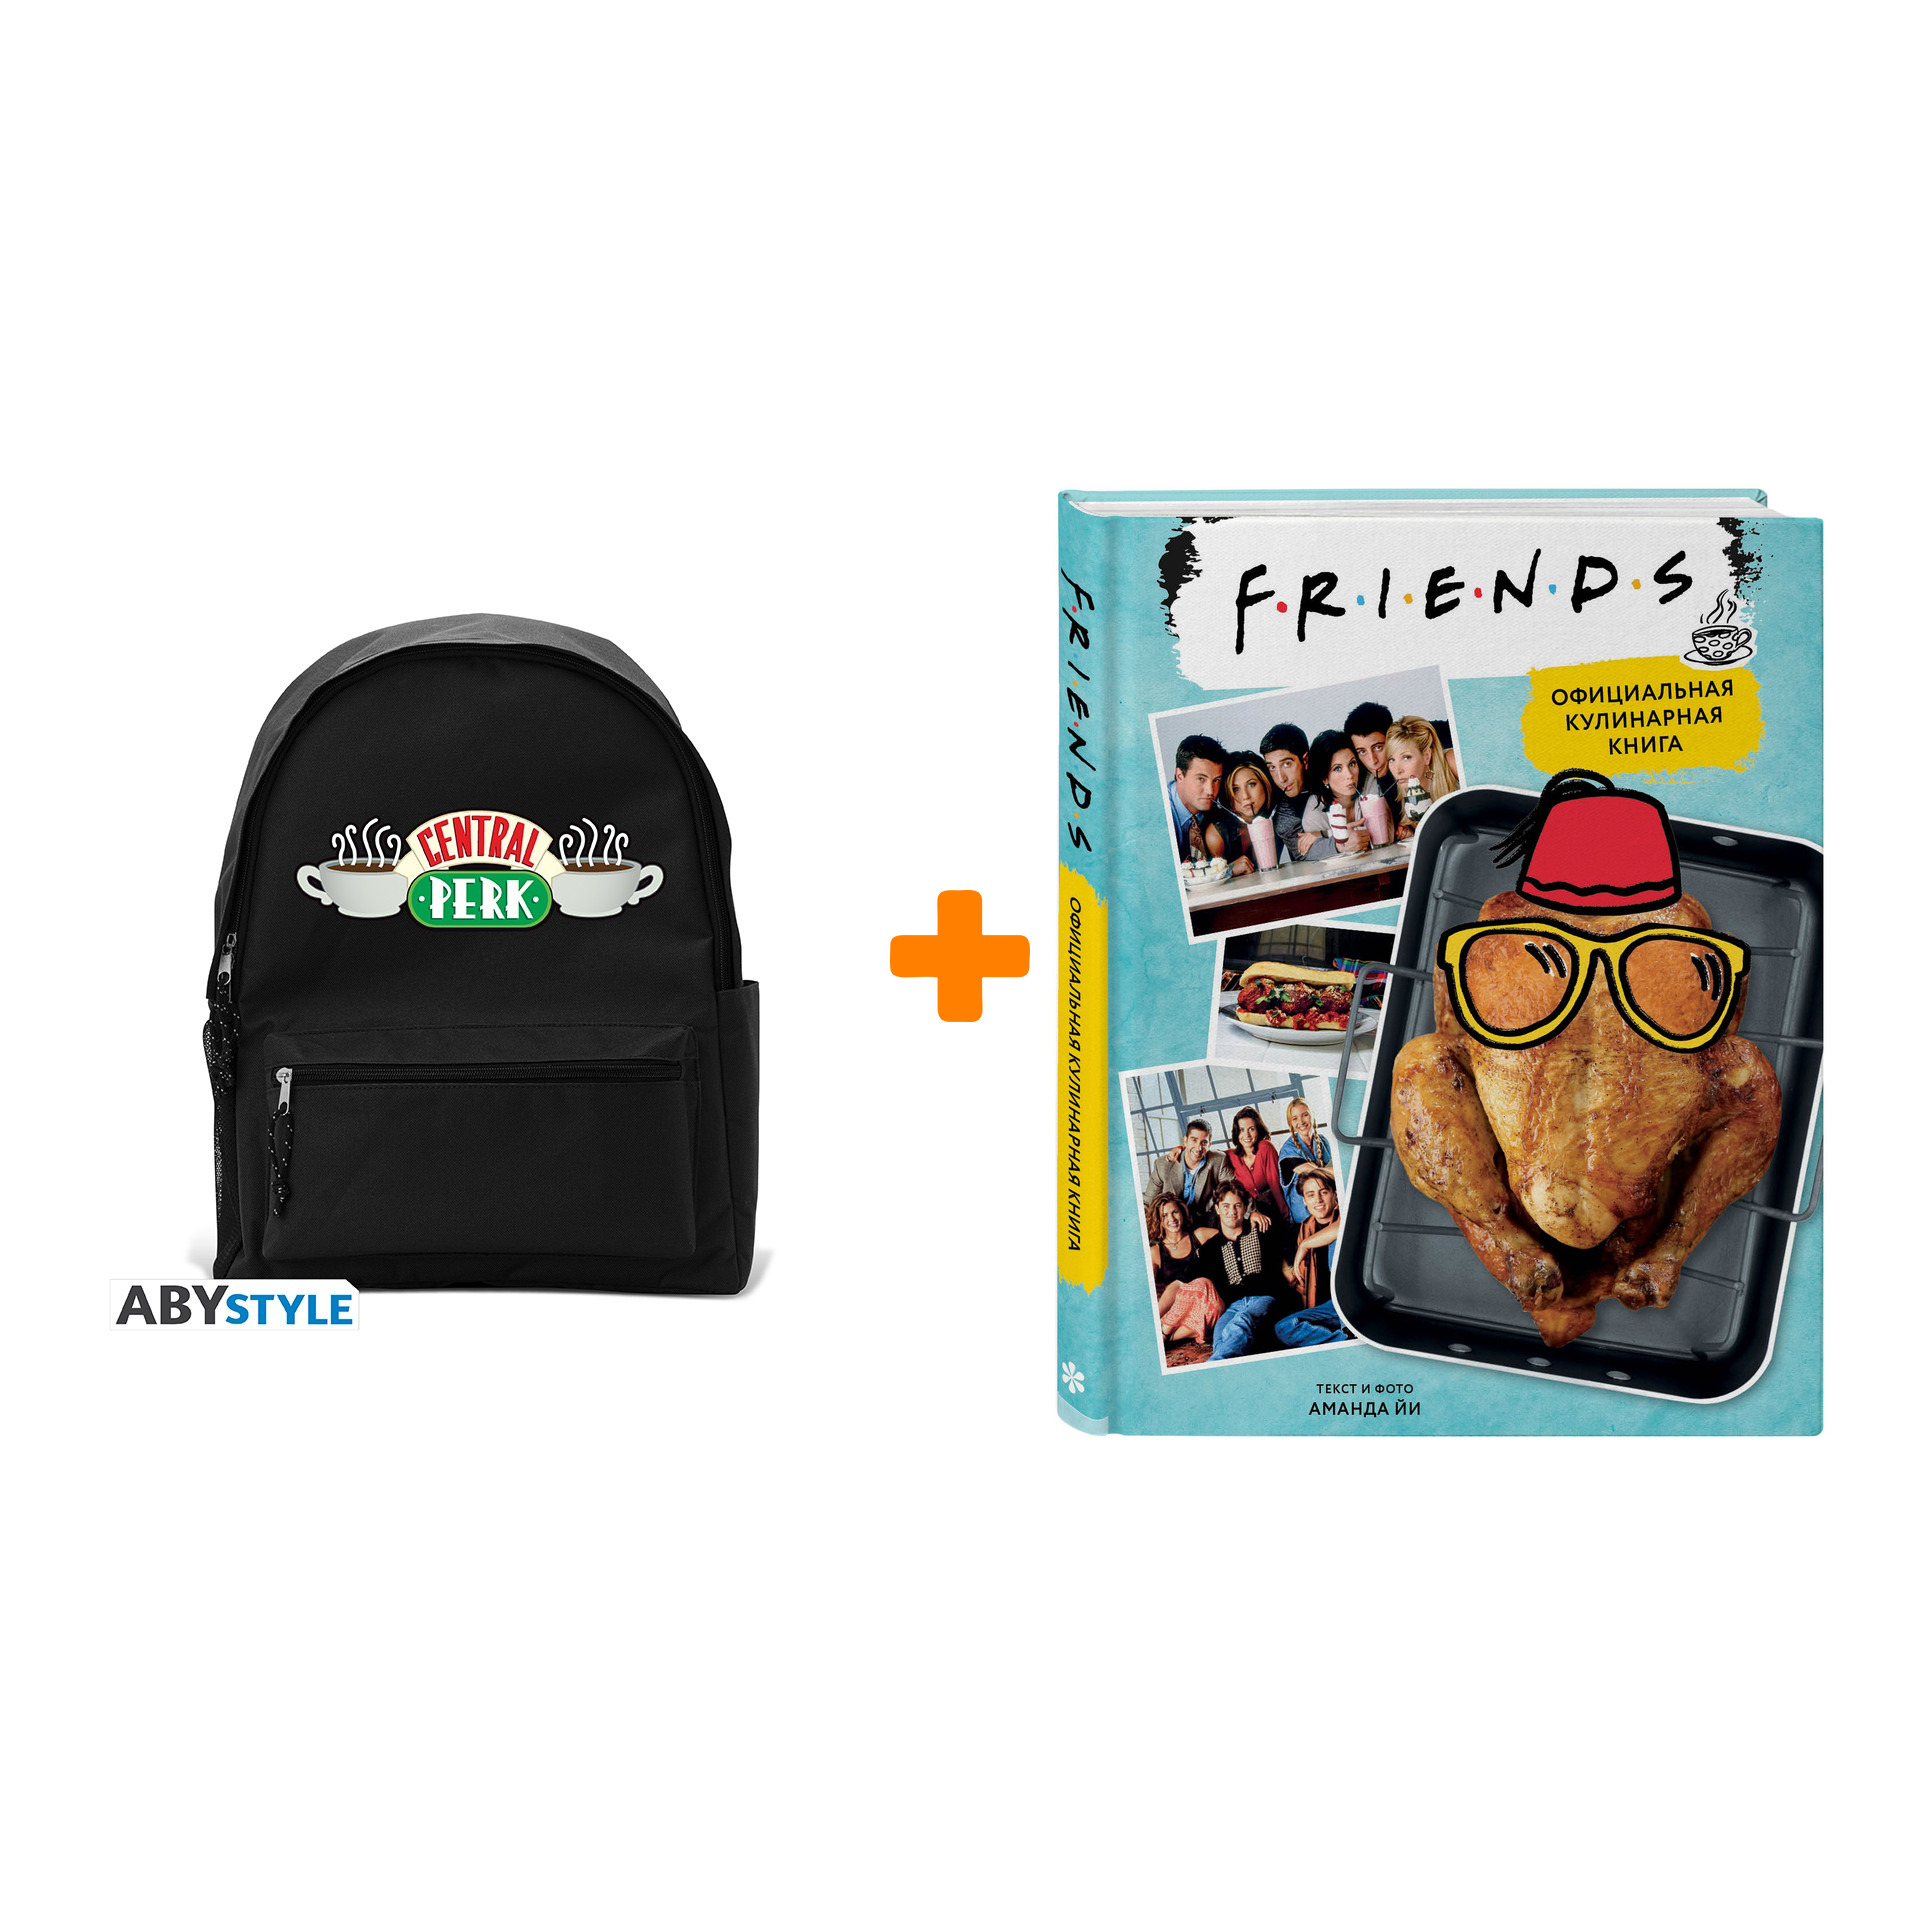 Набор Friends рюкзак Central Perk + официальная кулинарная книга